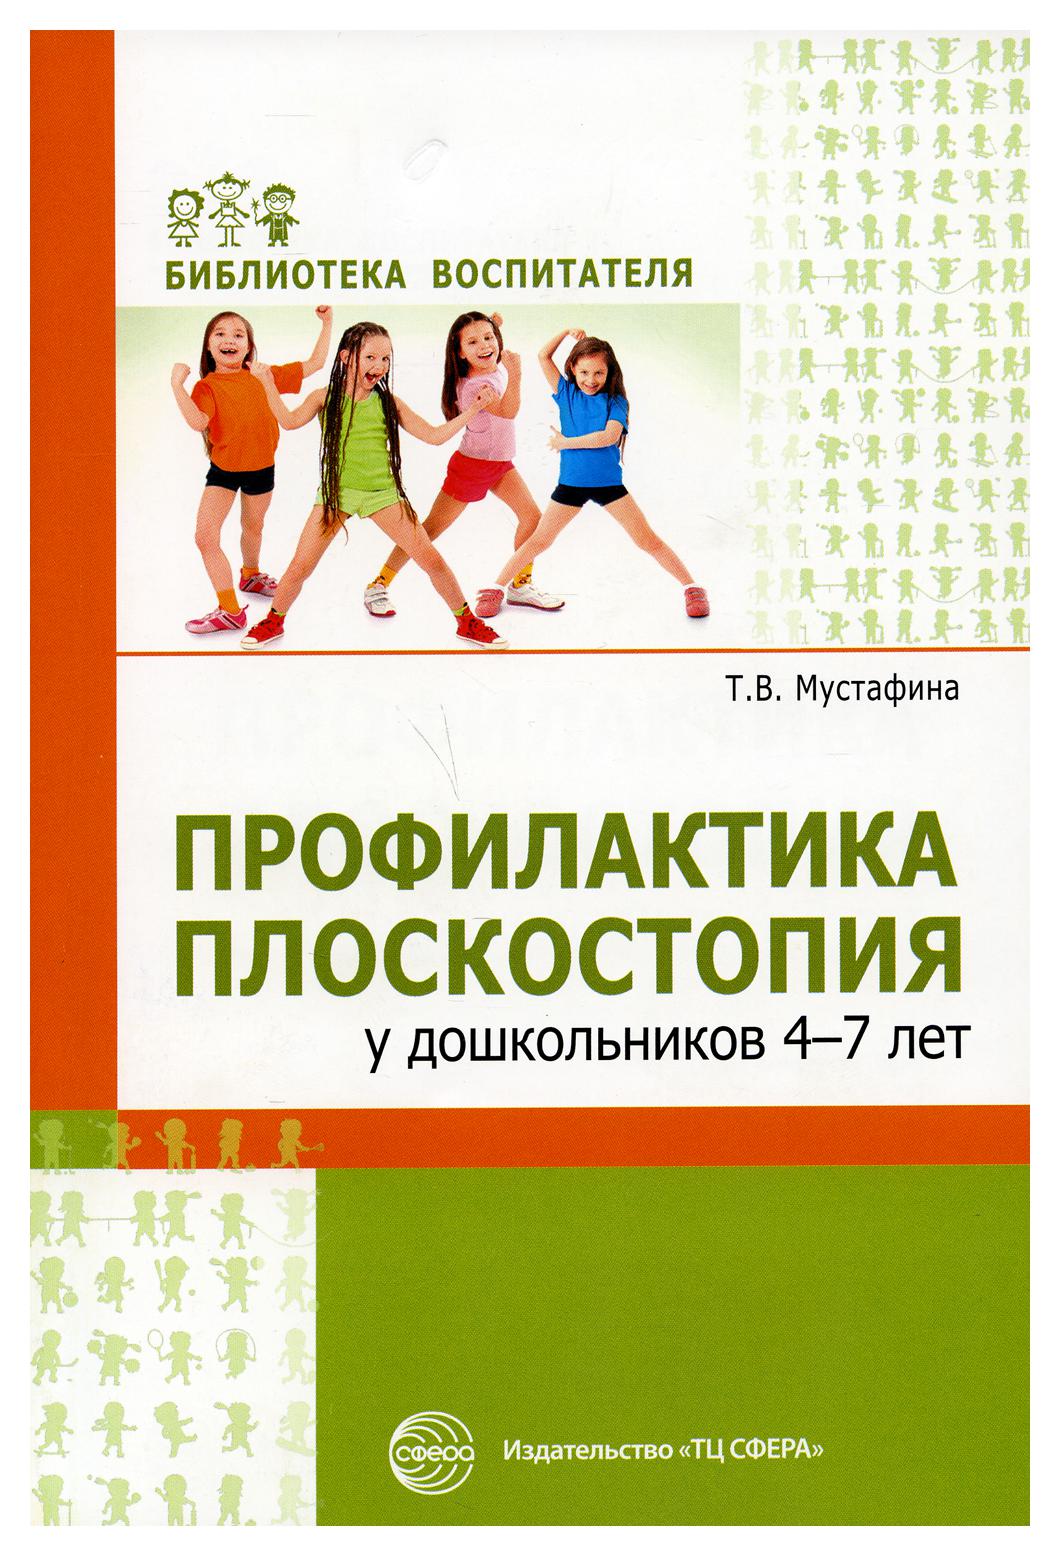 фото Книга профилактика плоскостопия у дошкольников 4-7 лет творческий центр сфера